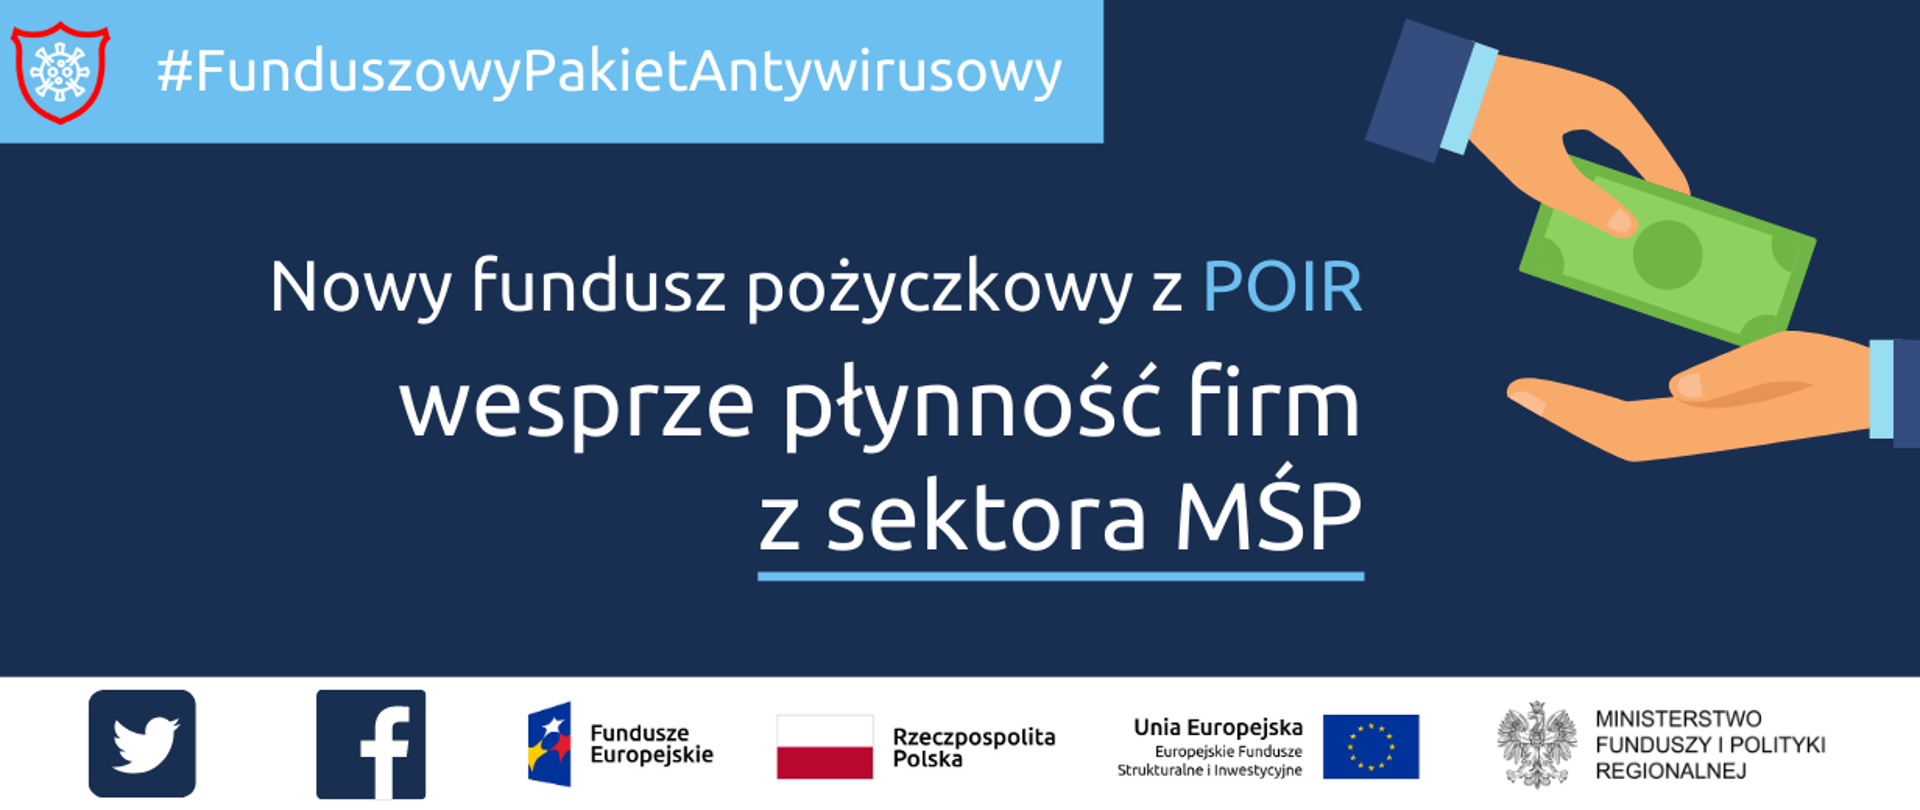 Tekst: Funduszowy Pakiet Antywirusowy. Nowy fundusz pożyczkowy z POIR wesprze płynność firm z sektora MŚP. Po lewej stronie grafika przedstawiająca dwie dłonie podające sobie banknot. Na dole unijne logotypy i flaga Polski